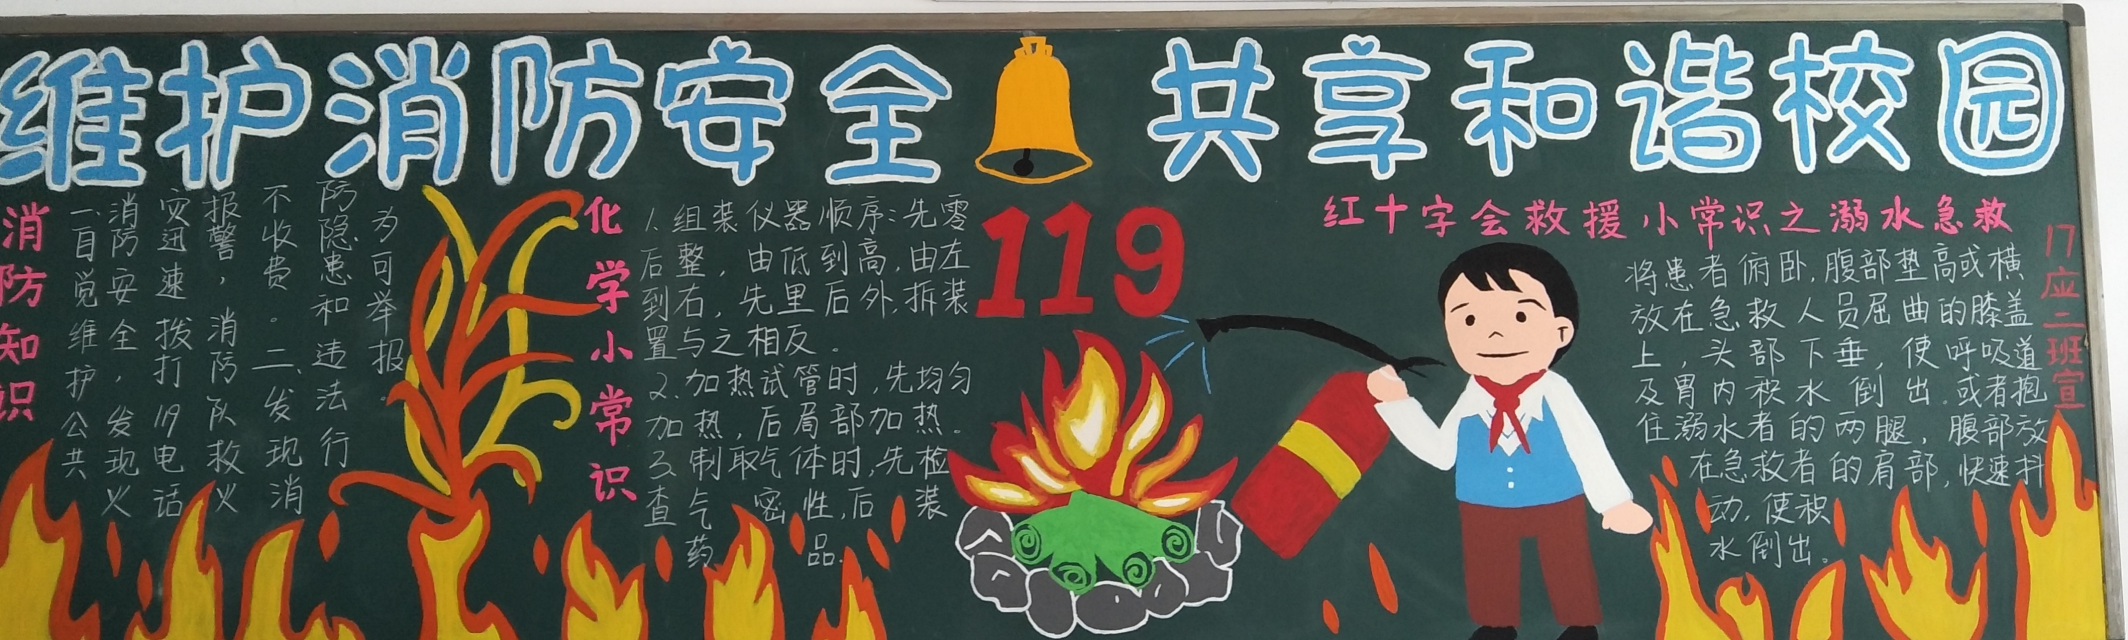 "维护消防安全,共享和谐校园"主题黑板报评比